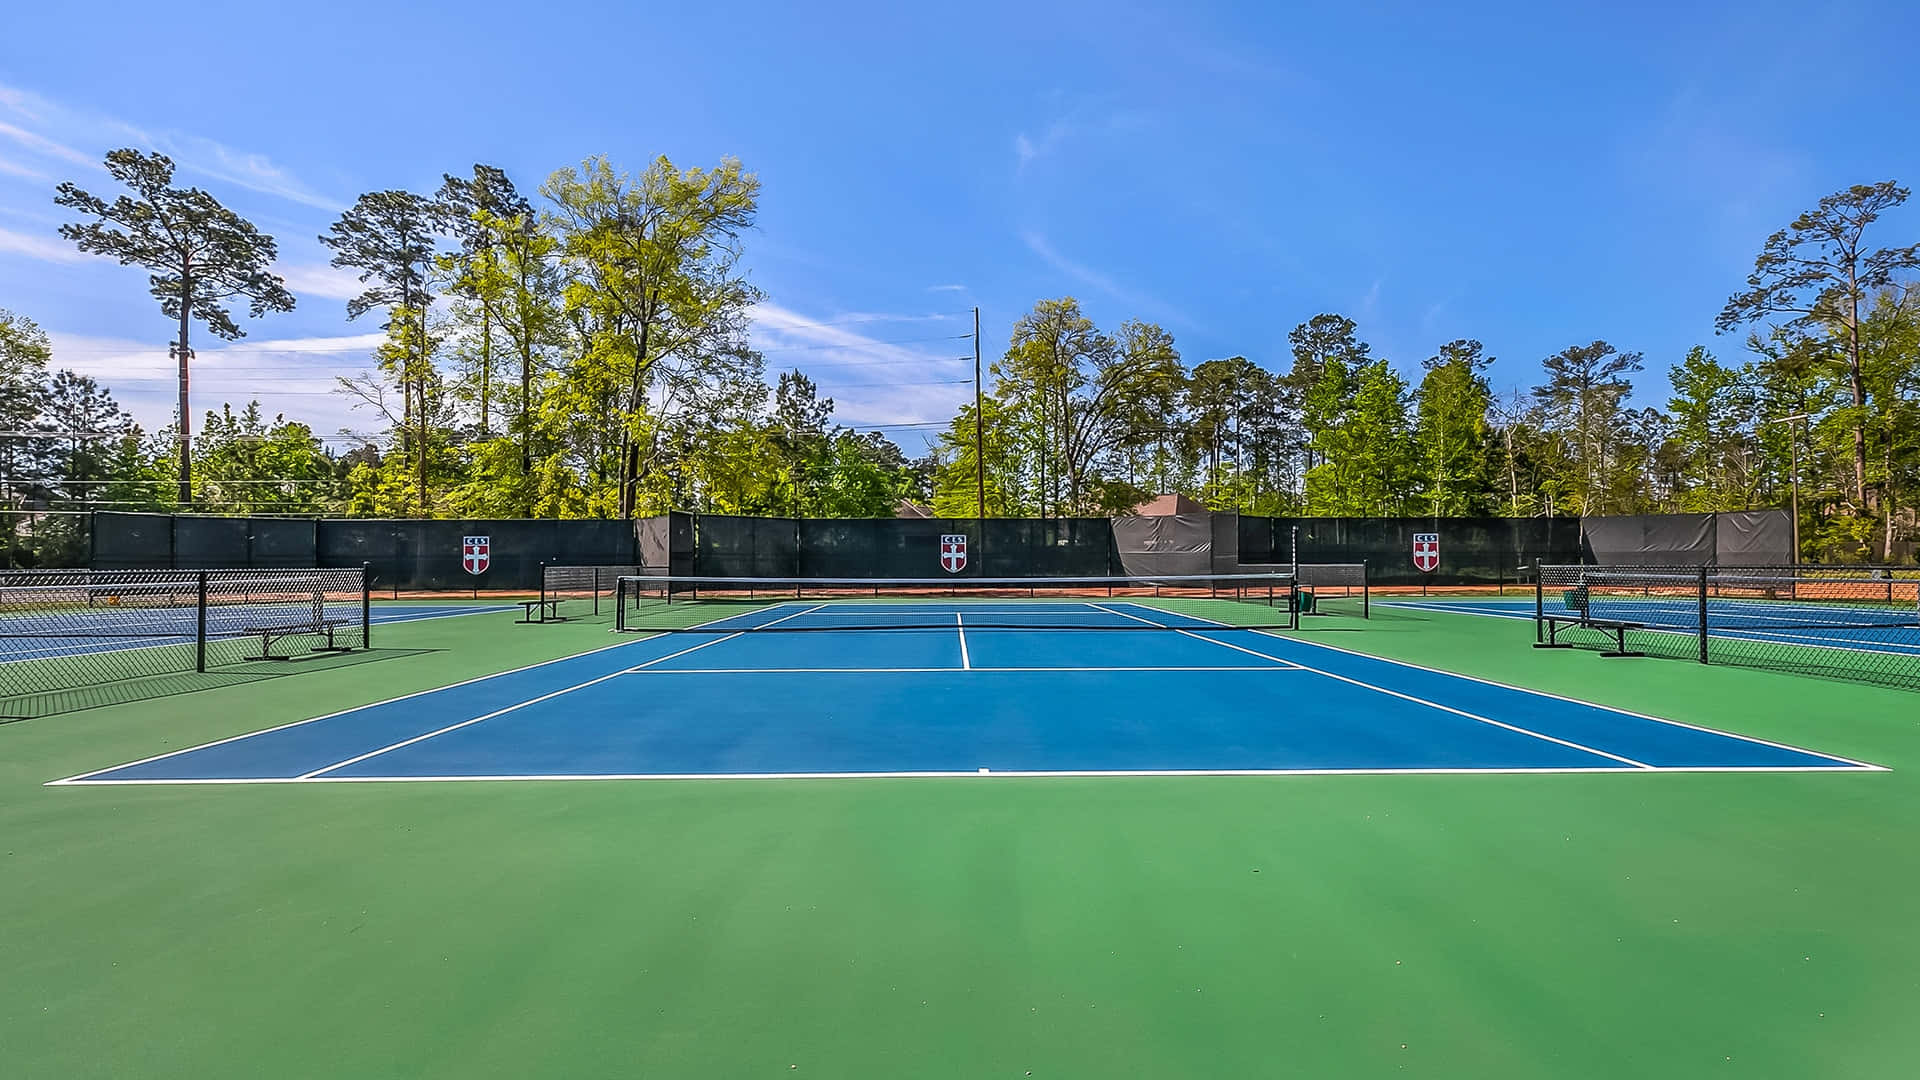 Hdhintergrundbild Eines Geöffneten Tennisplatzes.